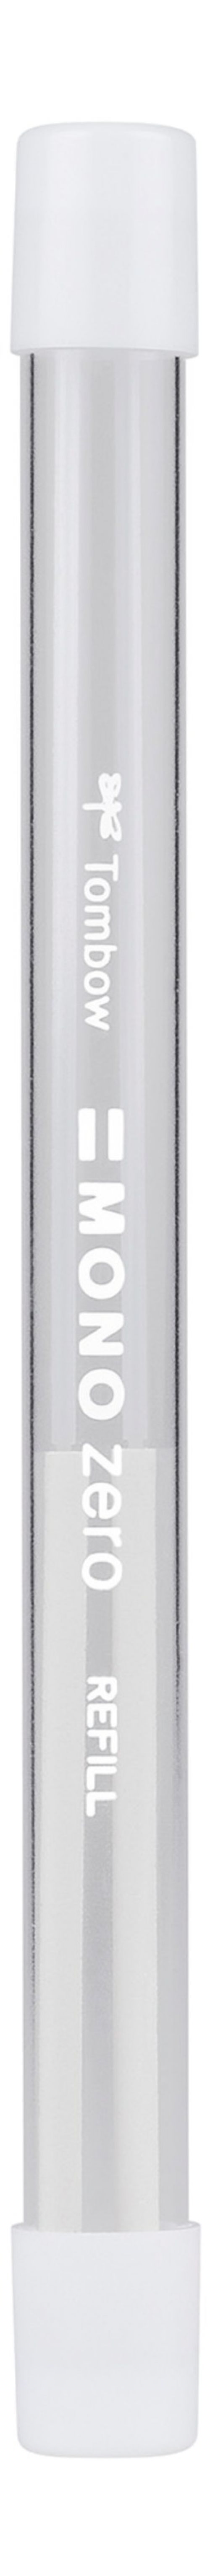 Tombow MONO Zero Refill for Round Tip Eraser White